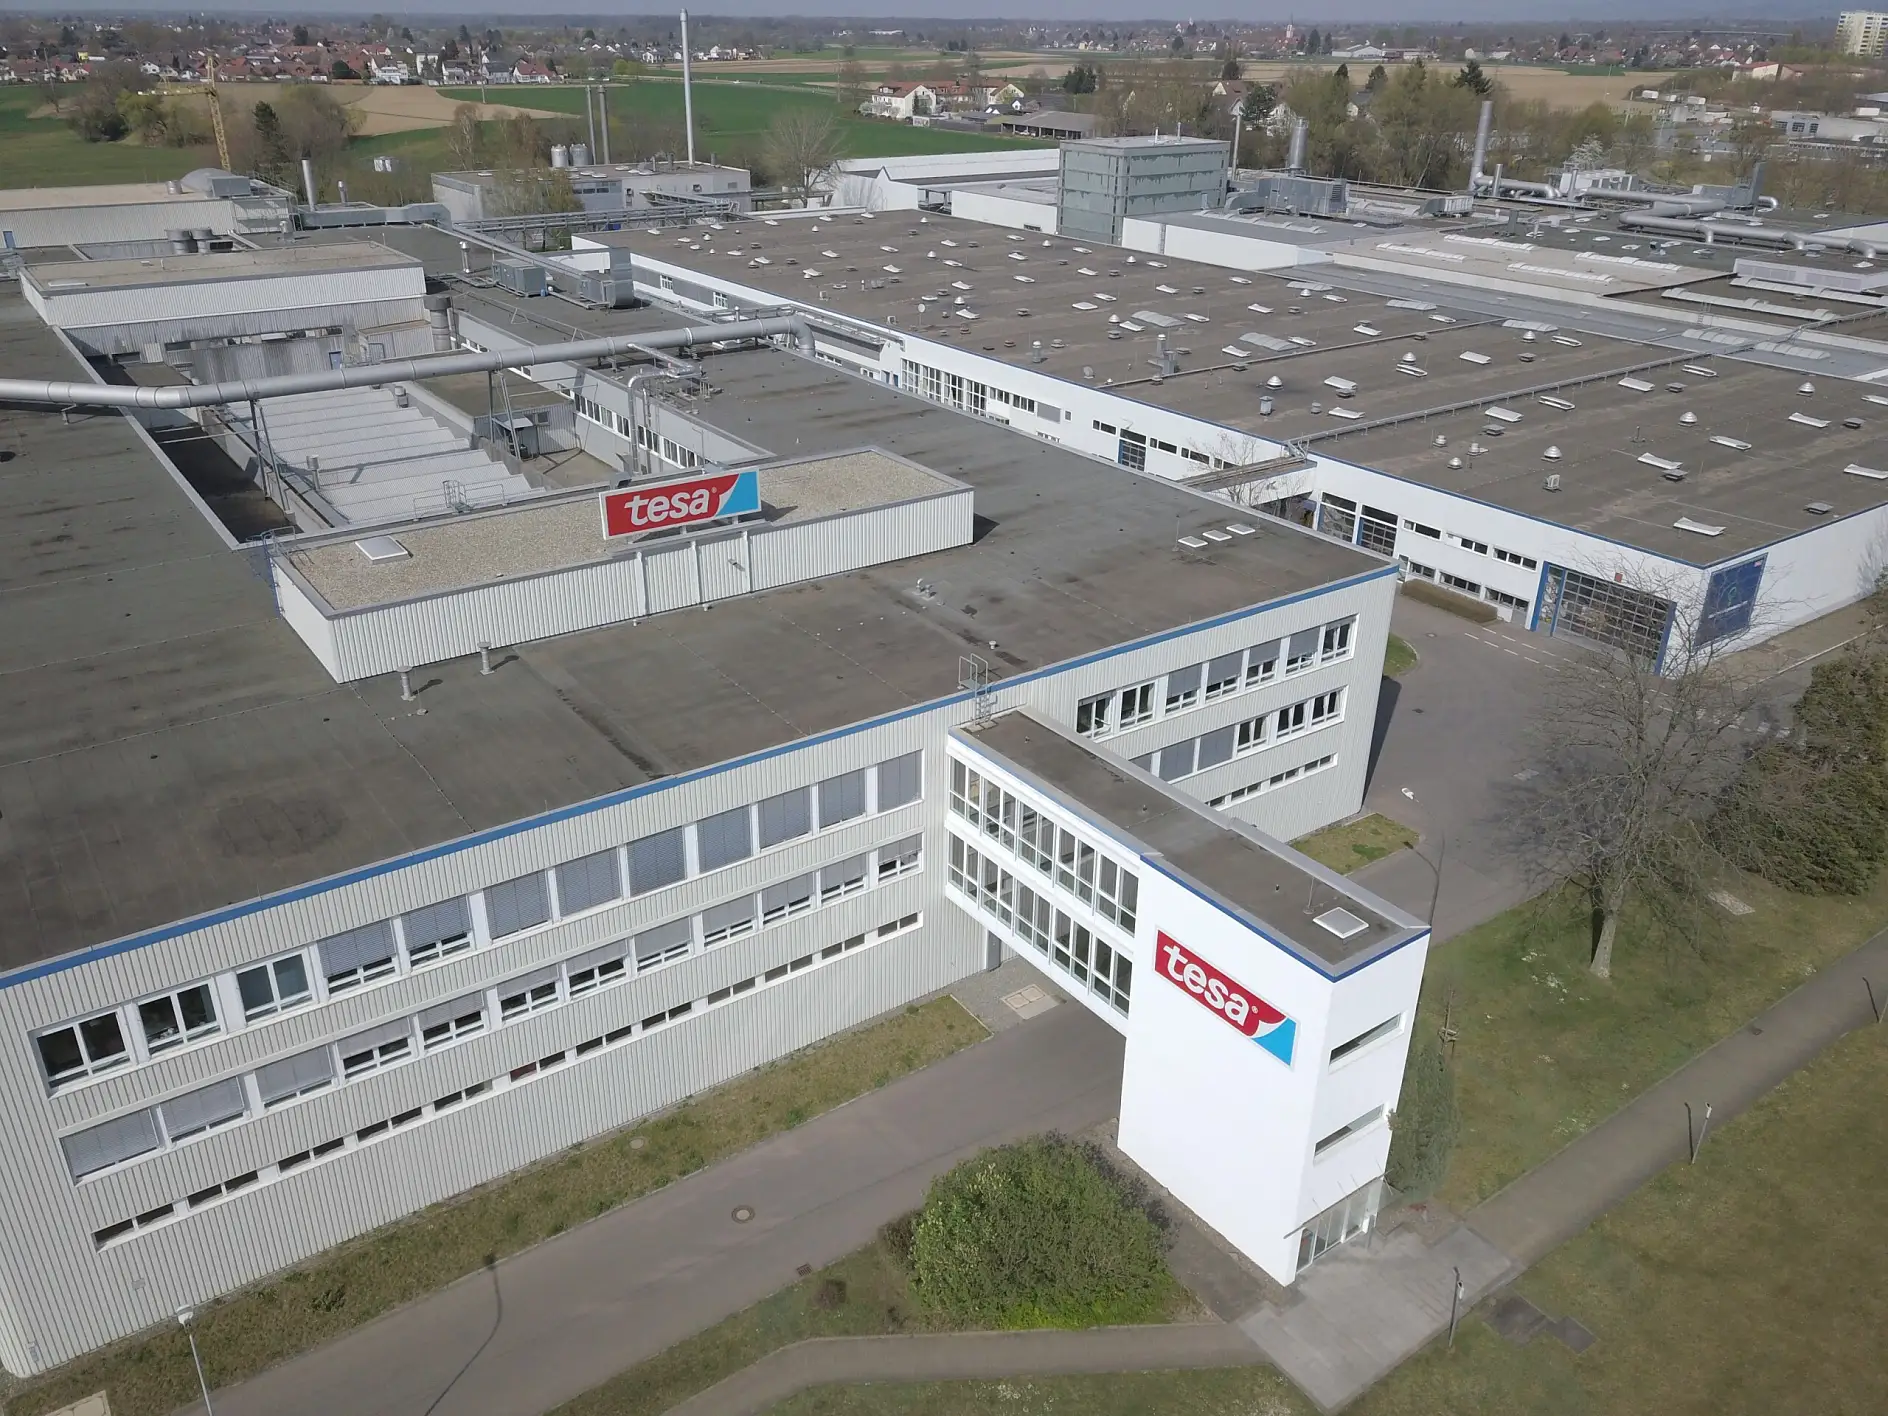 Uzņēmuma tesa rūpnīca Ofenburgā